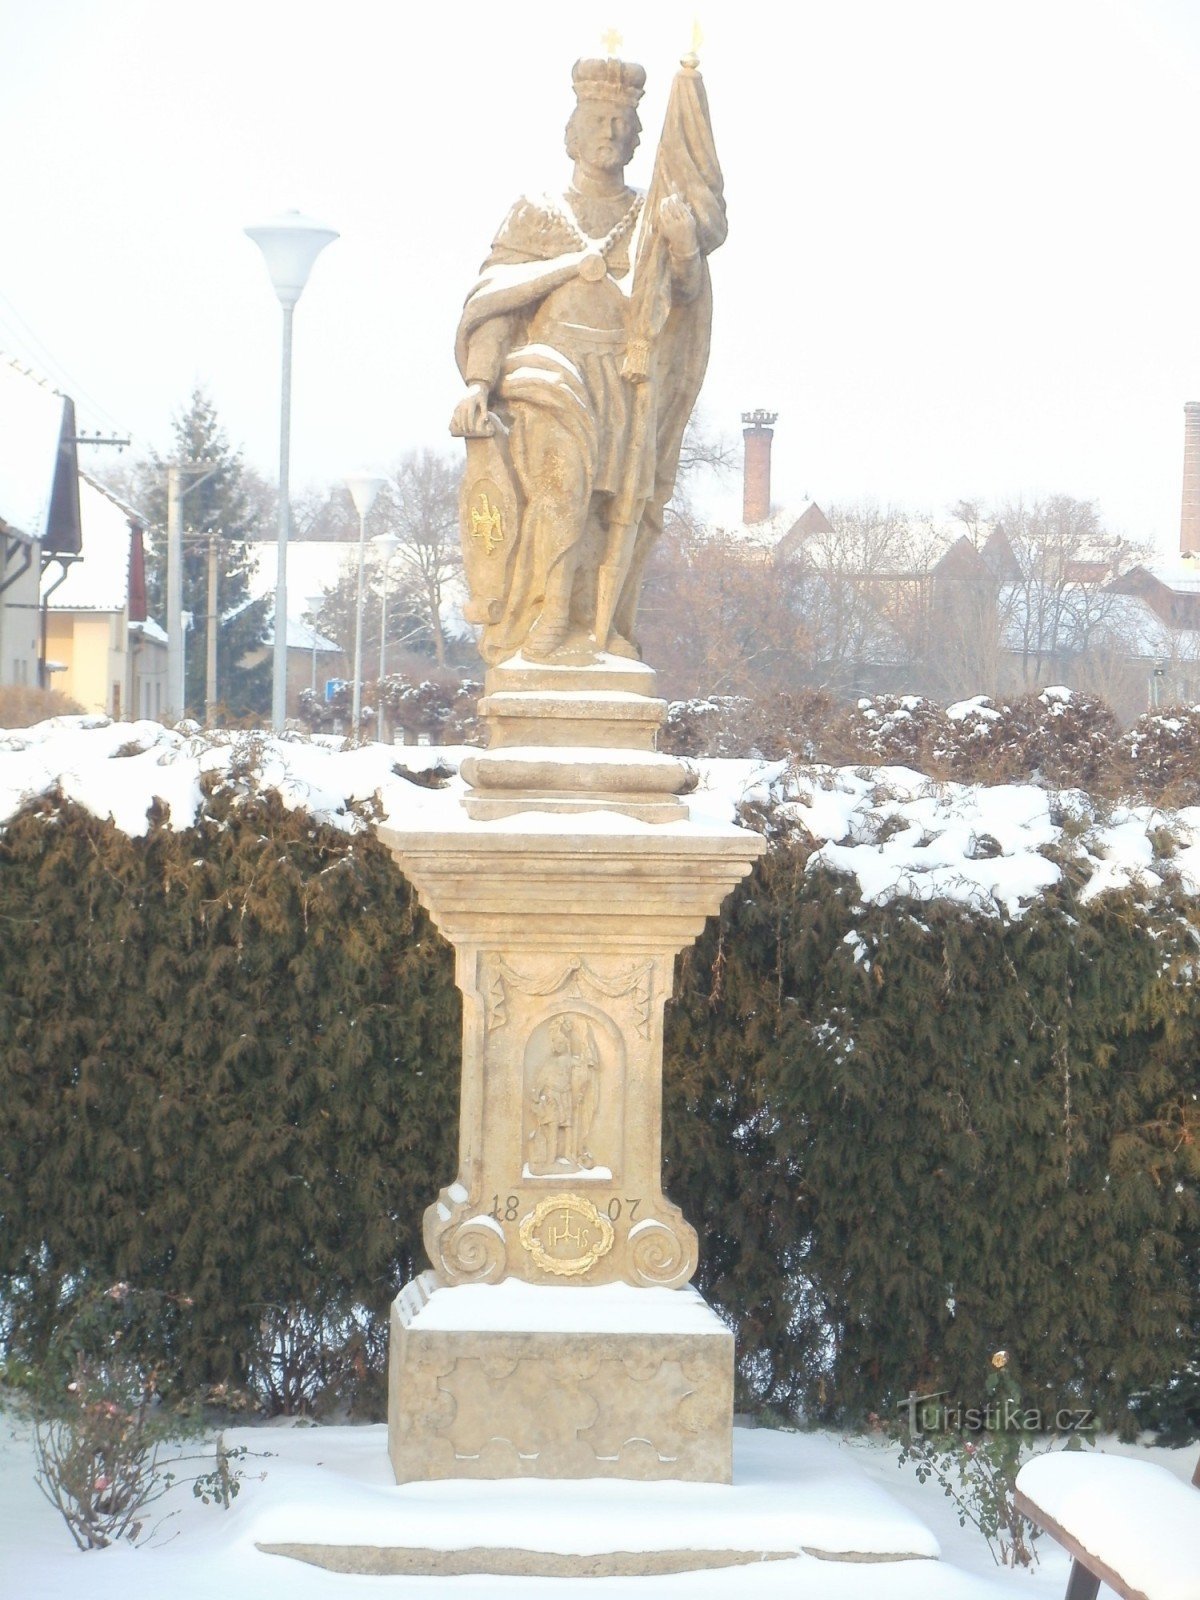 Chlumec nad Cidlinou - een monument met een standbeeld van St. Wenceslas